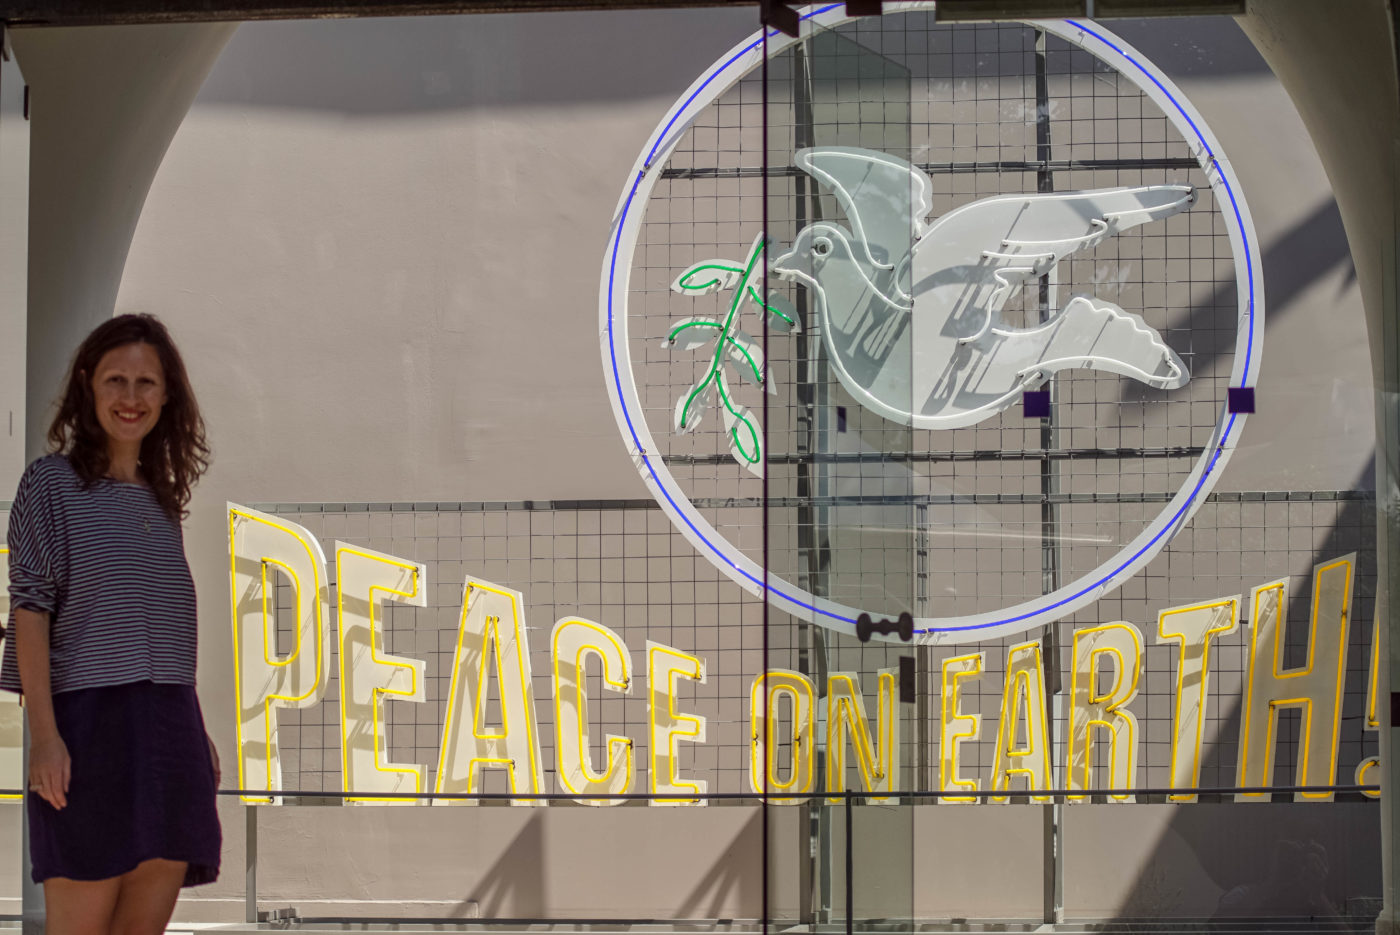 Lea steht vor dem ungarischen Pavillon Eingang und lächelt frölich in die Kamera. Neben ihr ist aus dünnen Neonröhren eine weiße Taube mit grünem zweig zu sehen, sie umschließt ein gelber Kreis. Darunter ist der Schriftzug "peace on earth!" zu lesen